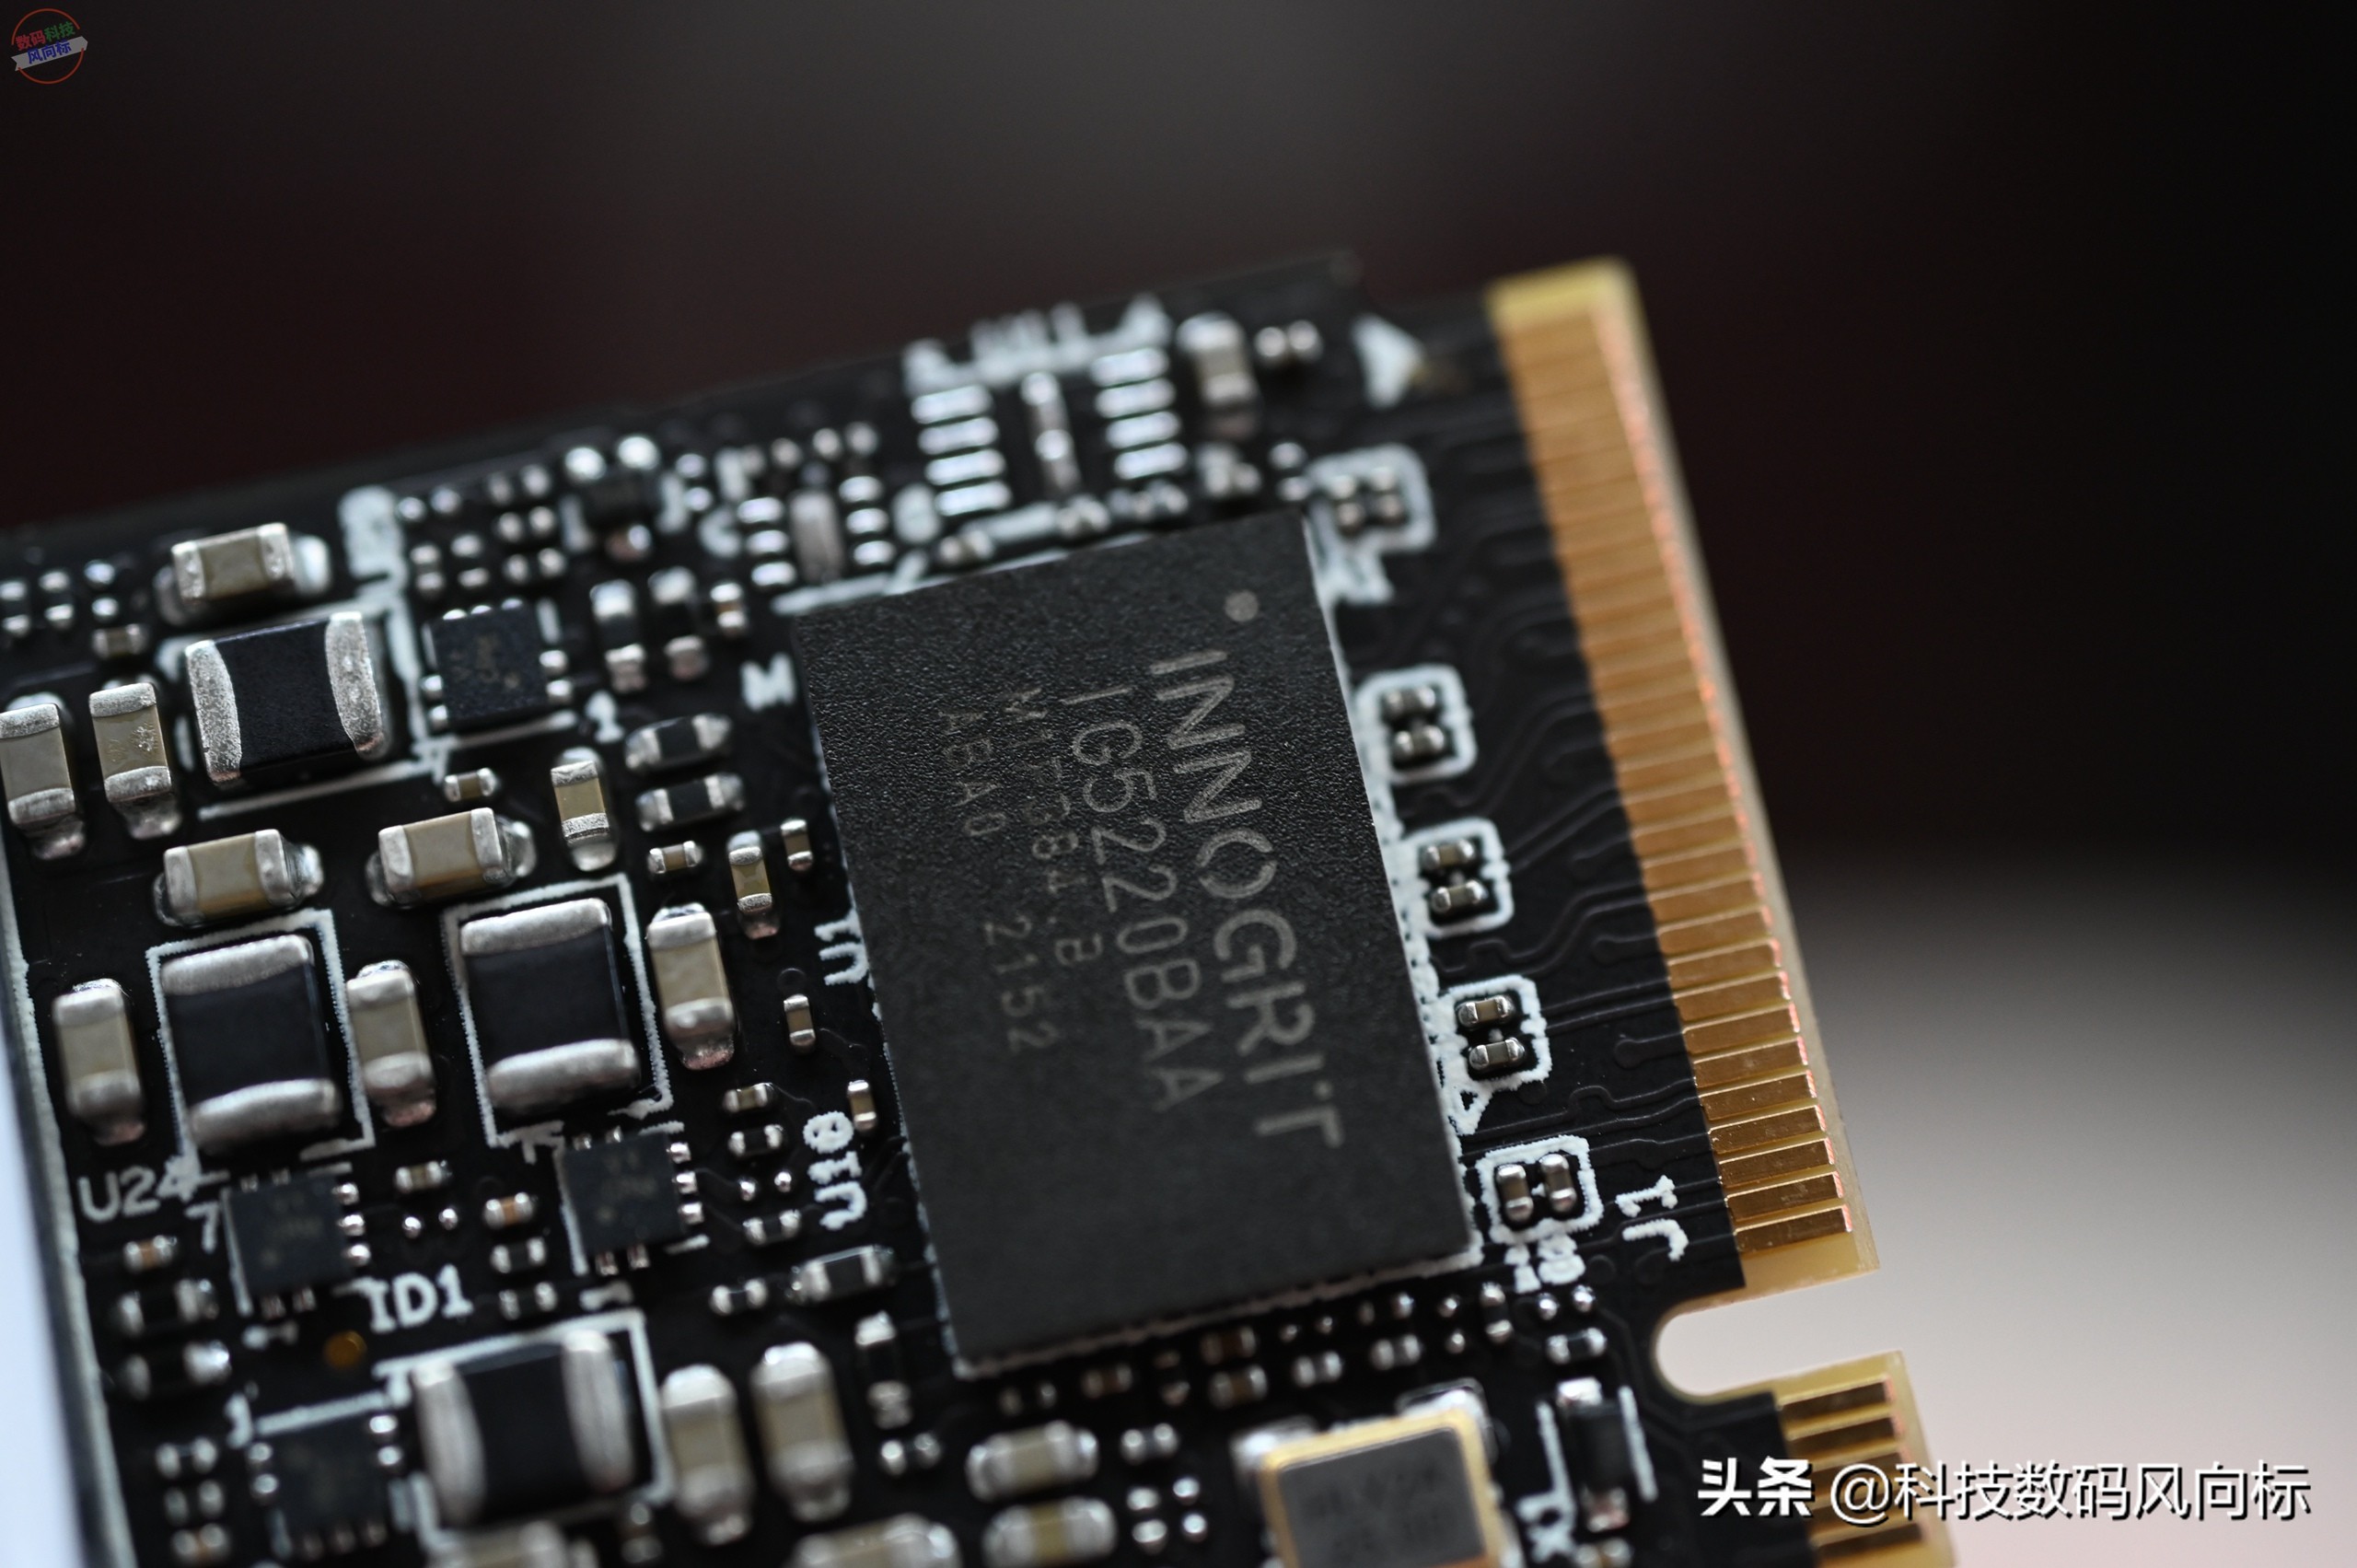 稳定可靠的国产PCIe4.0固态，主机升级新选择，大华C970上手